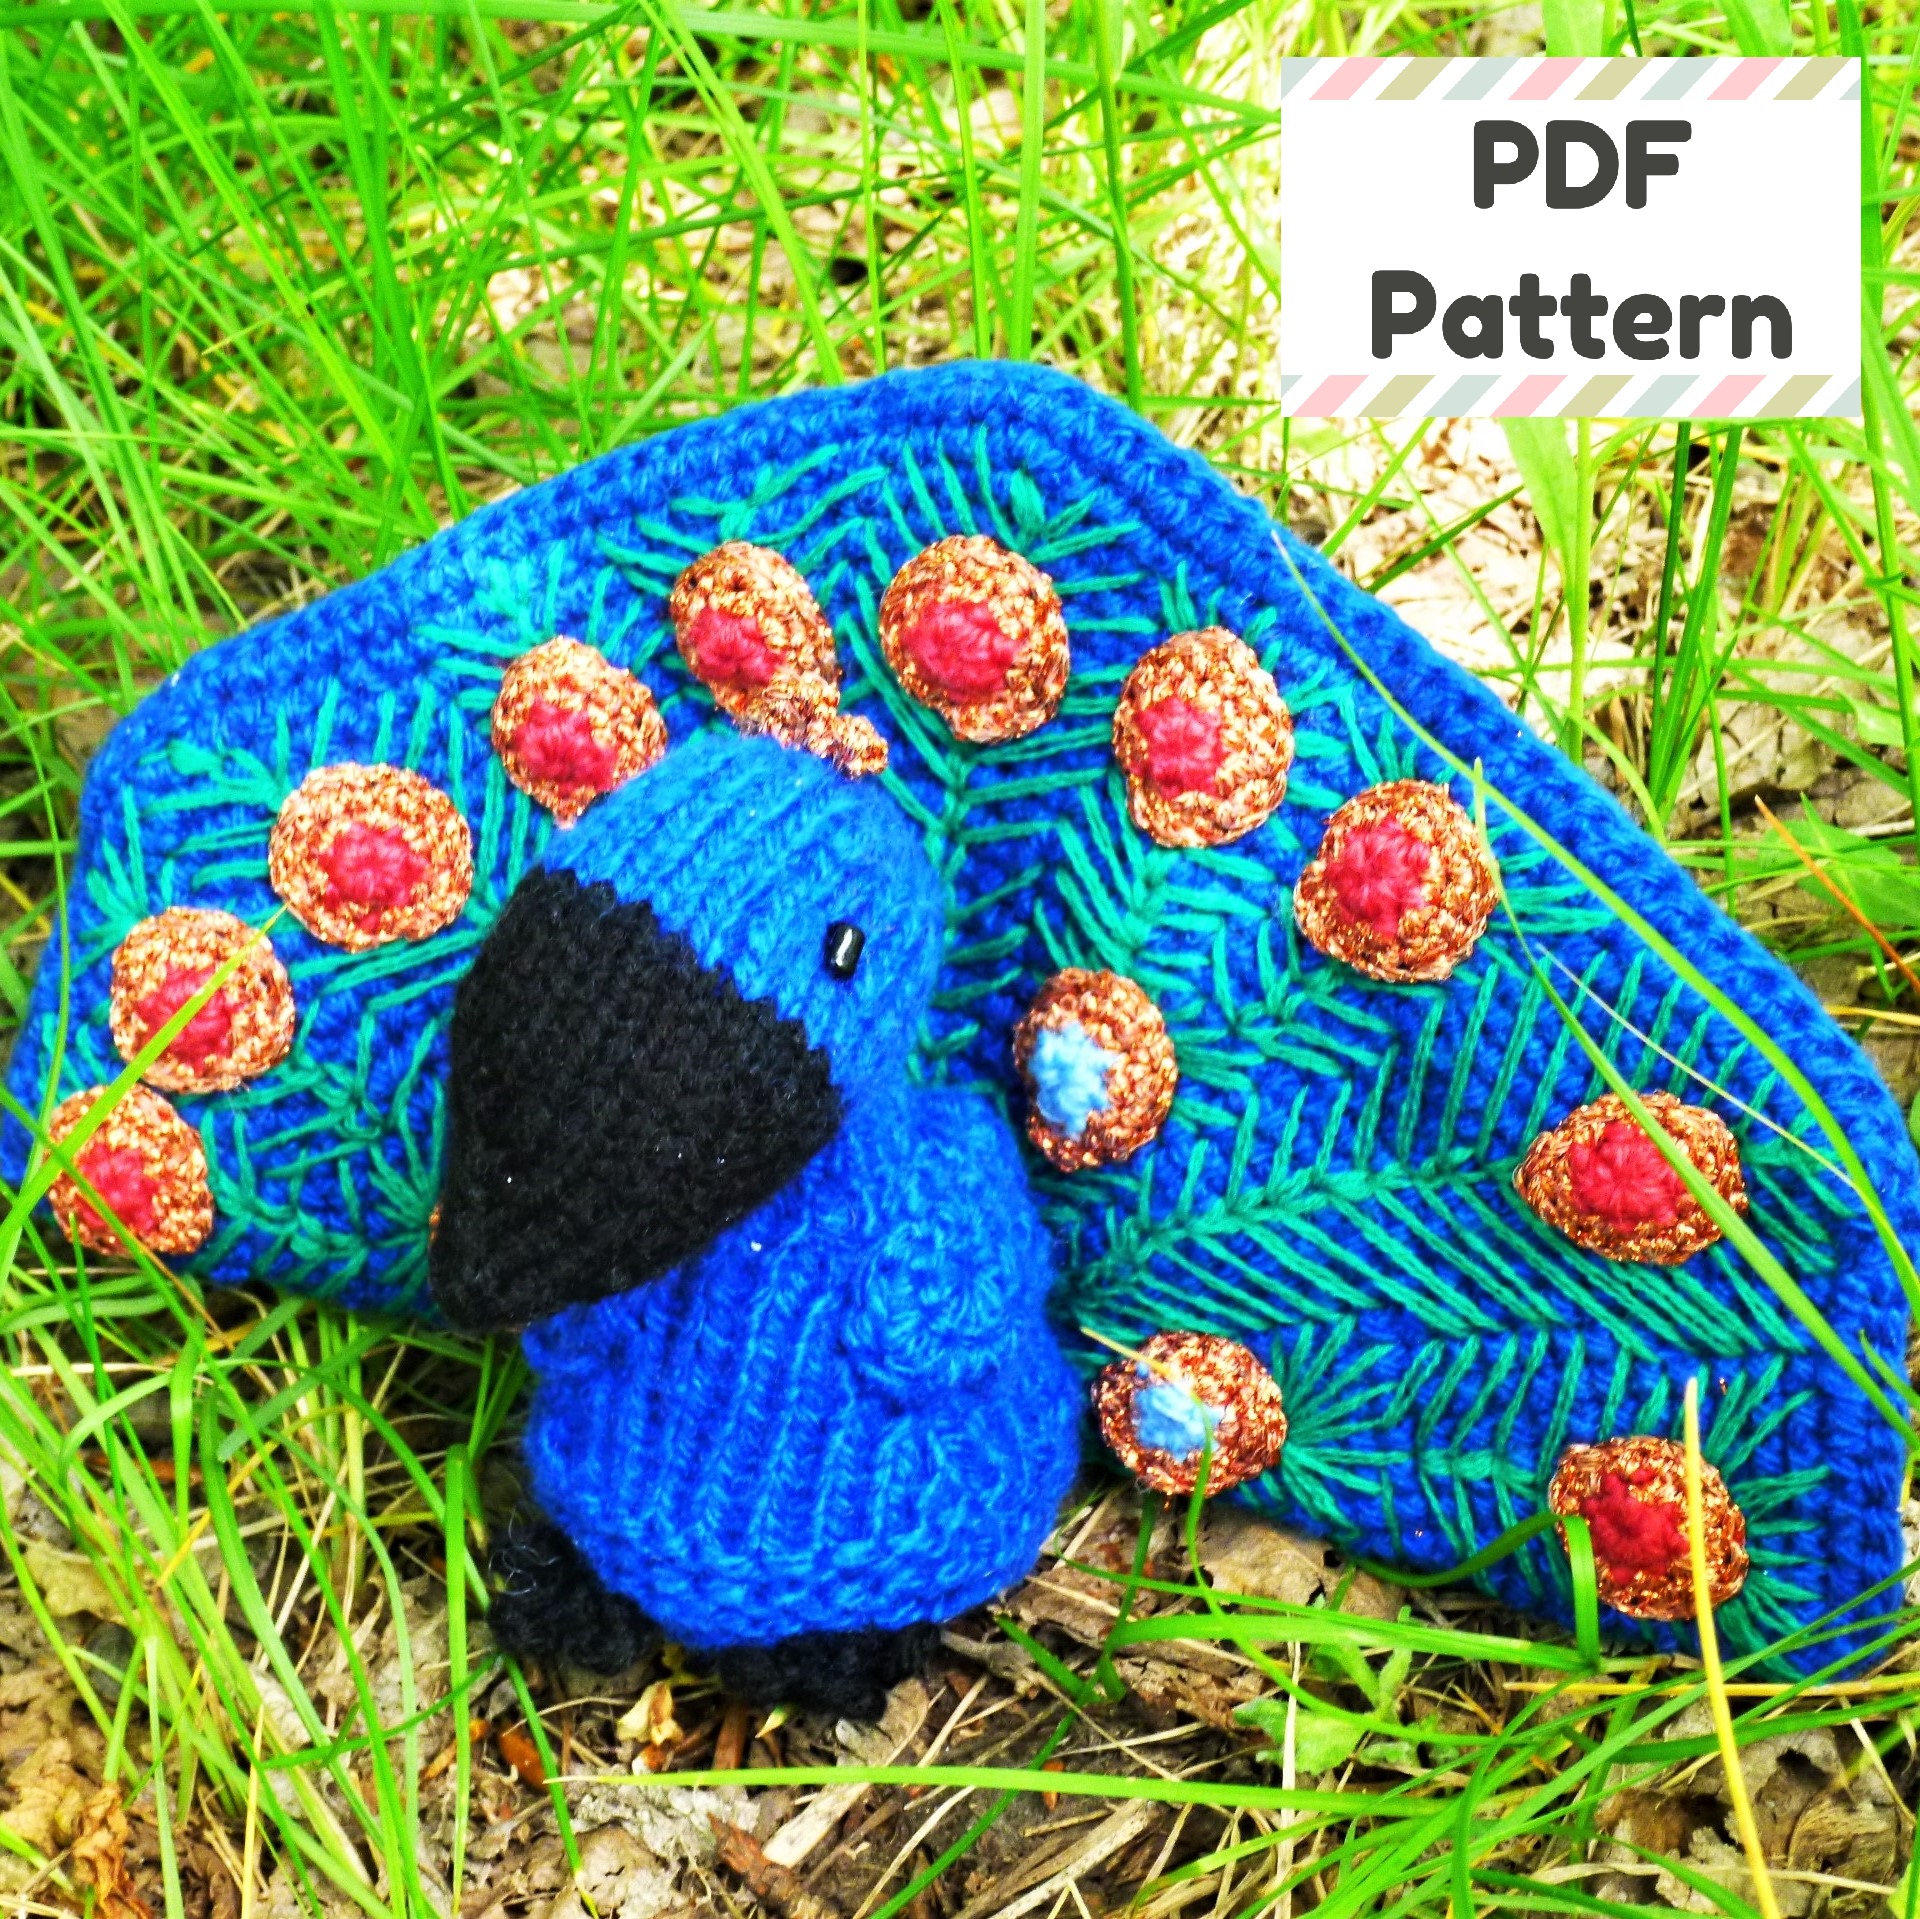 Paisley the Peacock Amigurumi Knit & Crochet Kit